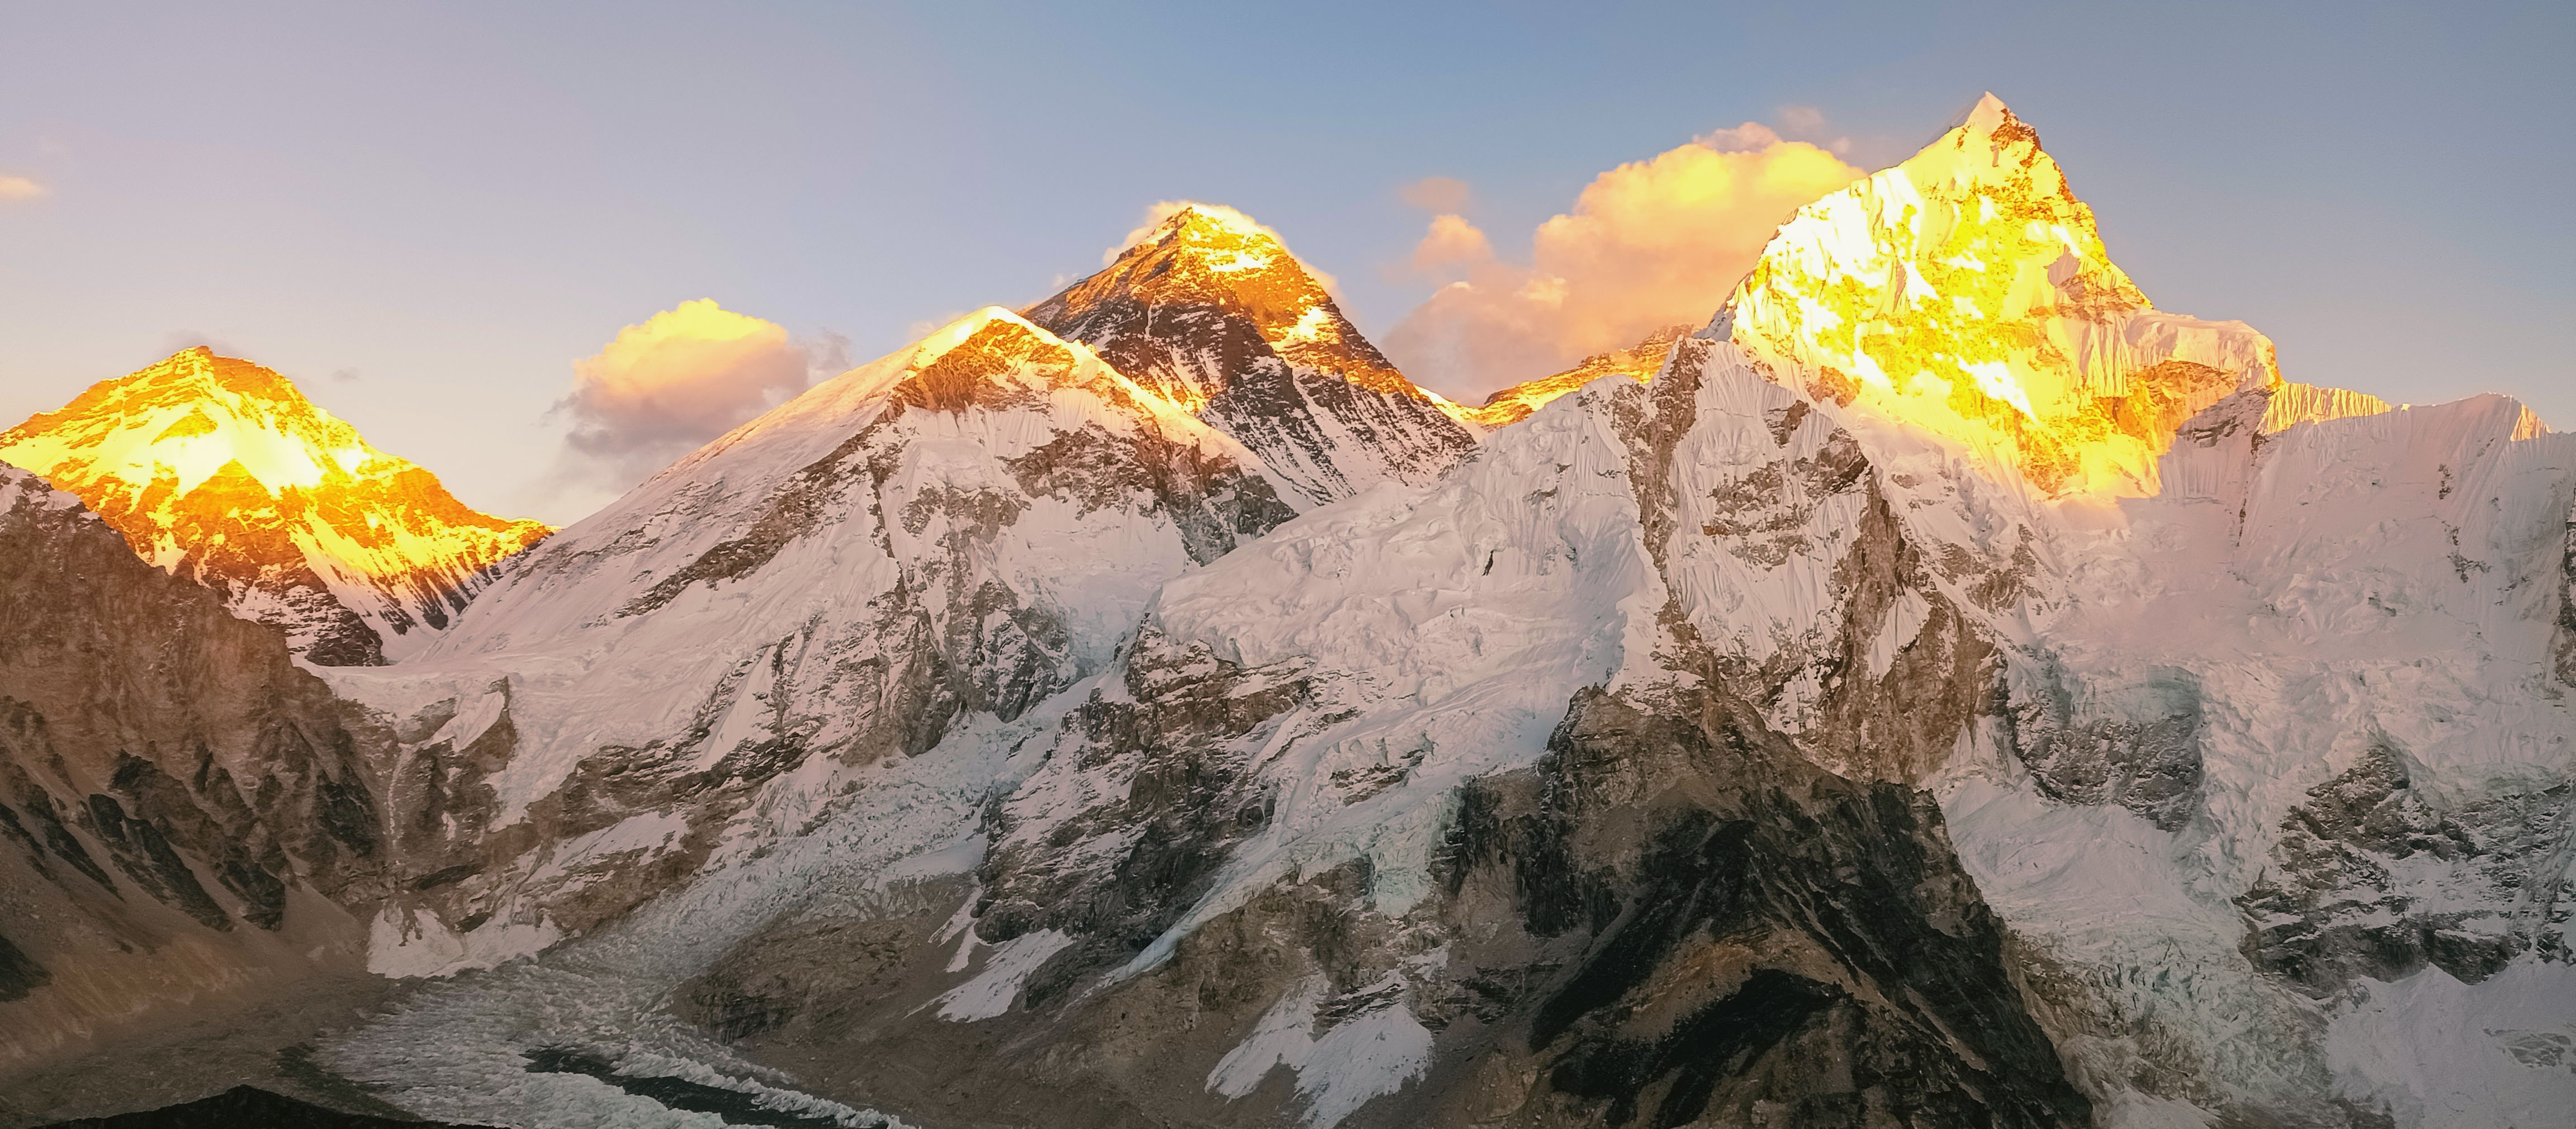 Sunset view over Everest seen from Kala Patthar.